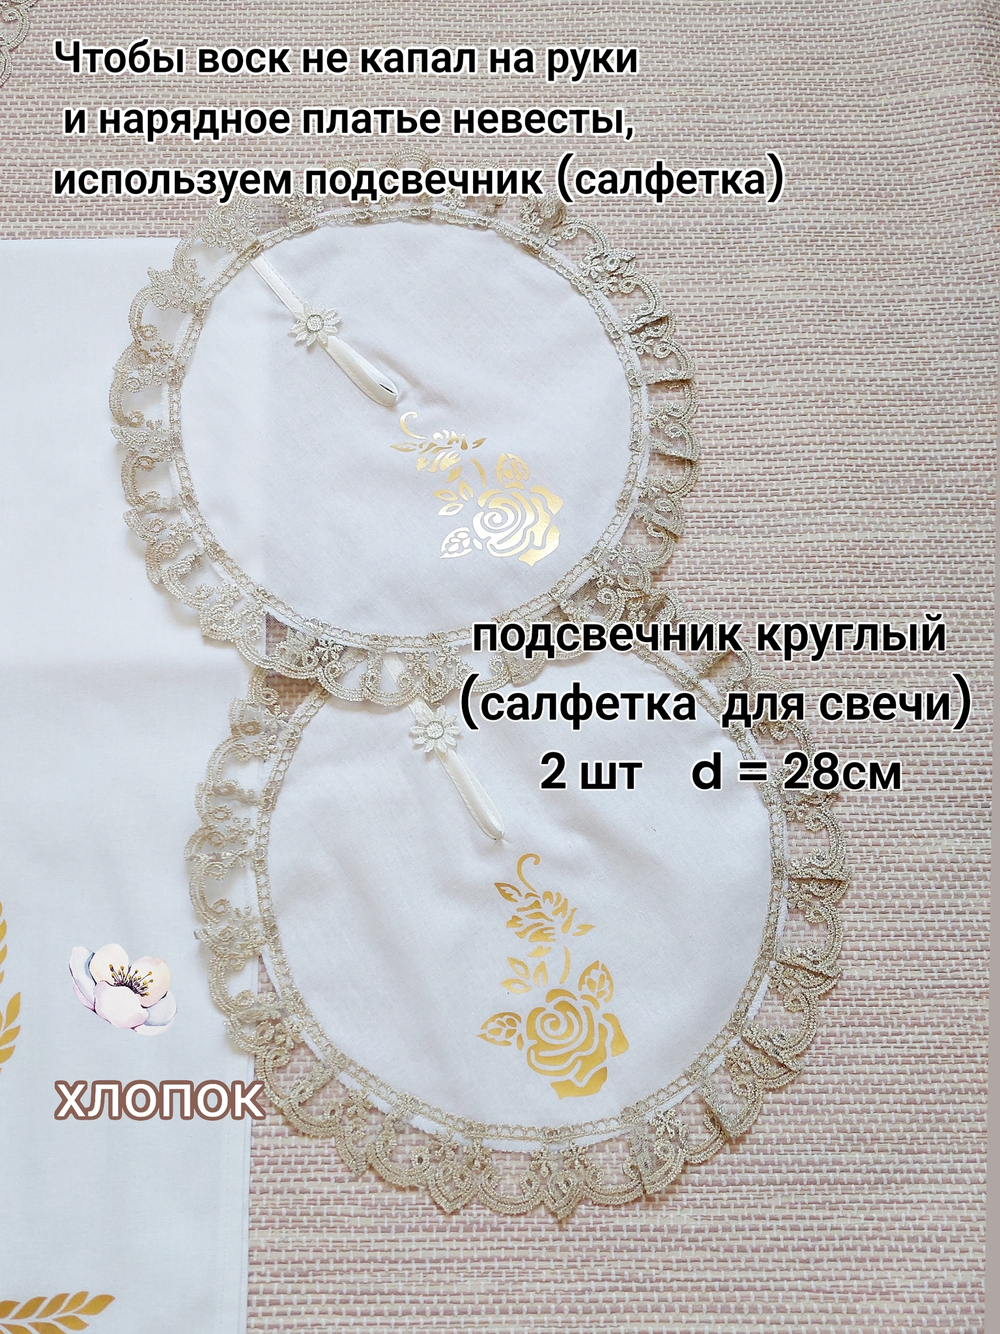 Венчальный набор свадебный рушник " Хлеб Соль" бежевое-золото, 7 предметов: 3 рушника, 4 салфетки